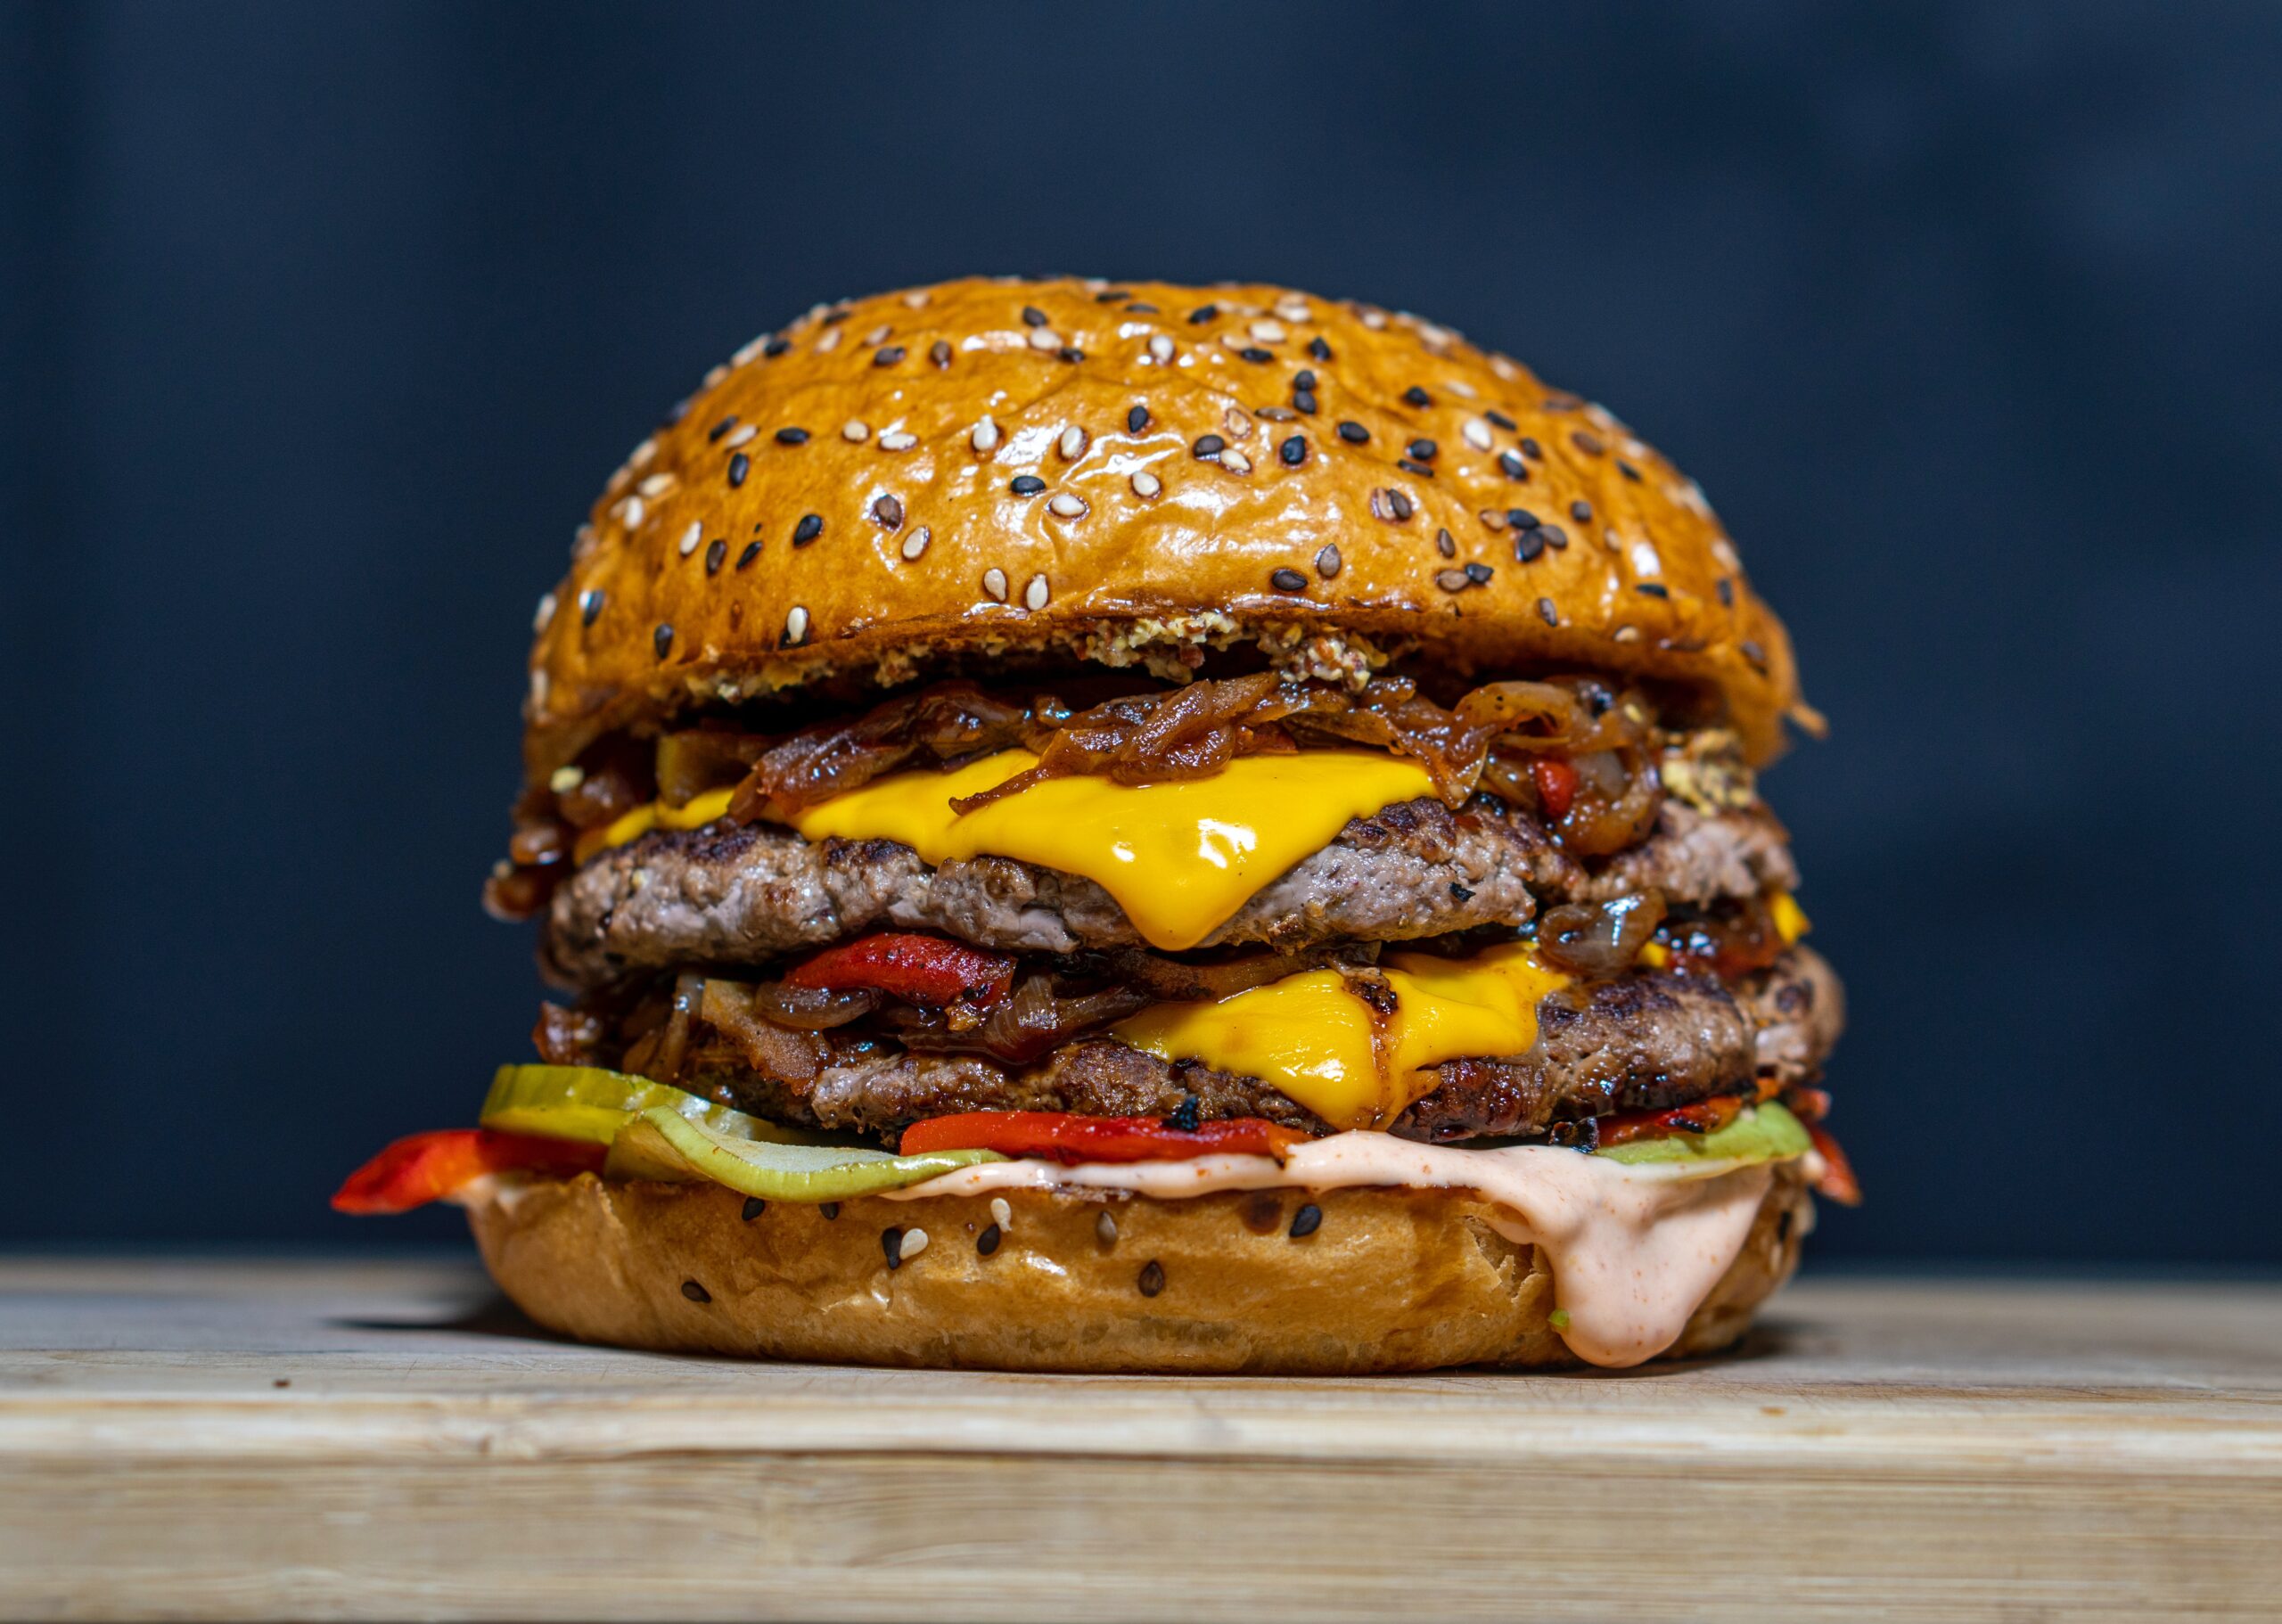 Closeup of a burger